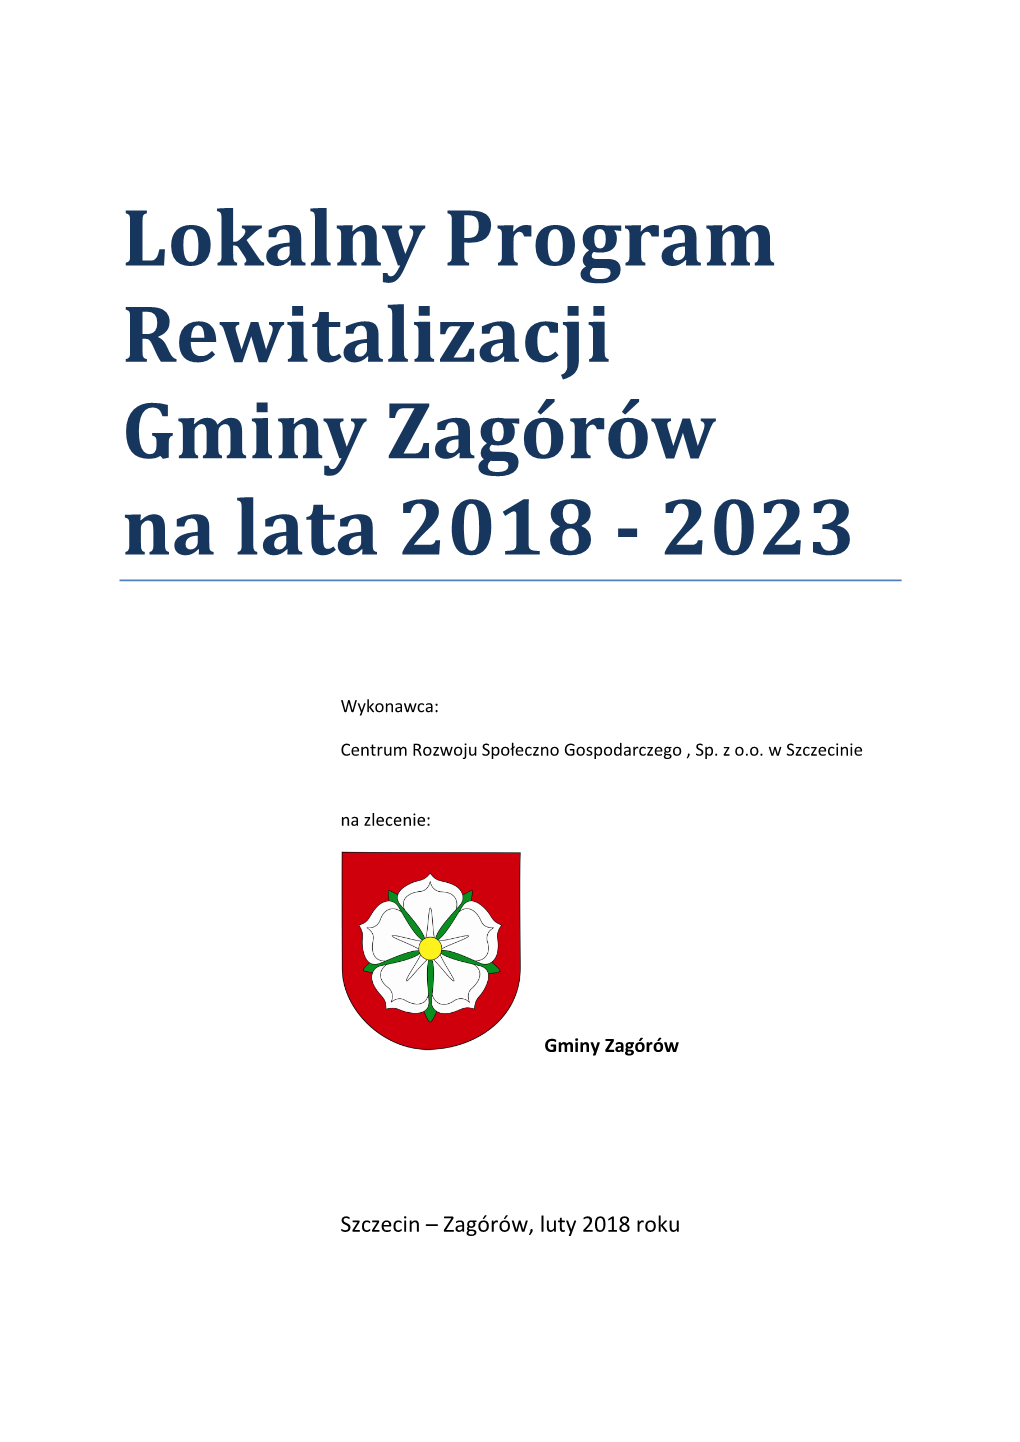 Lokalny Program Rewitalizacji Gminy Zagórów Na Lata 2018 - 2023